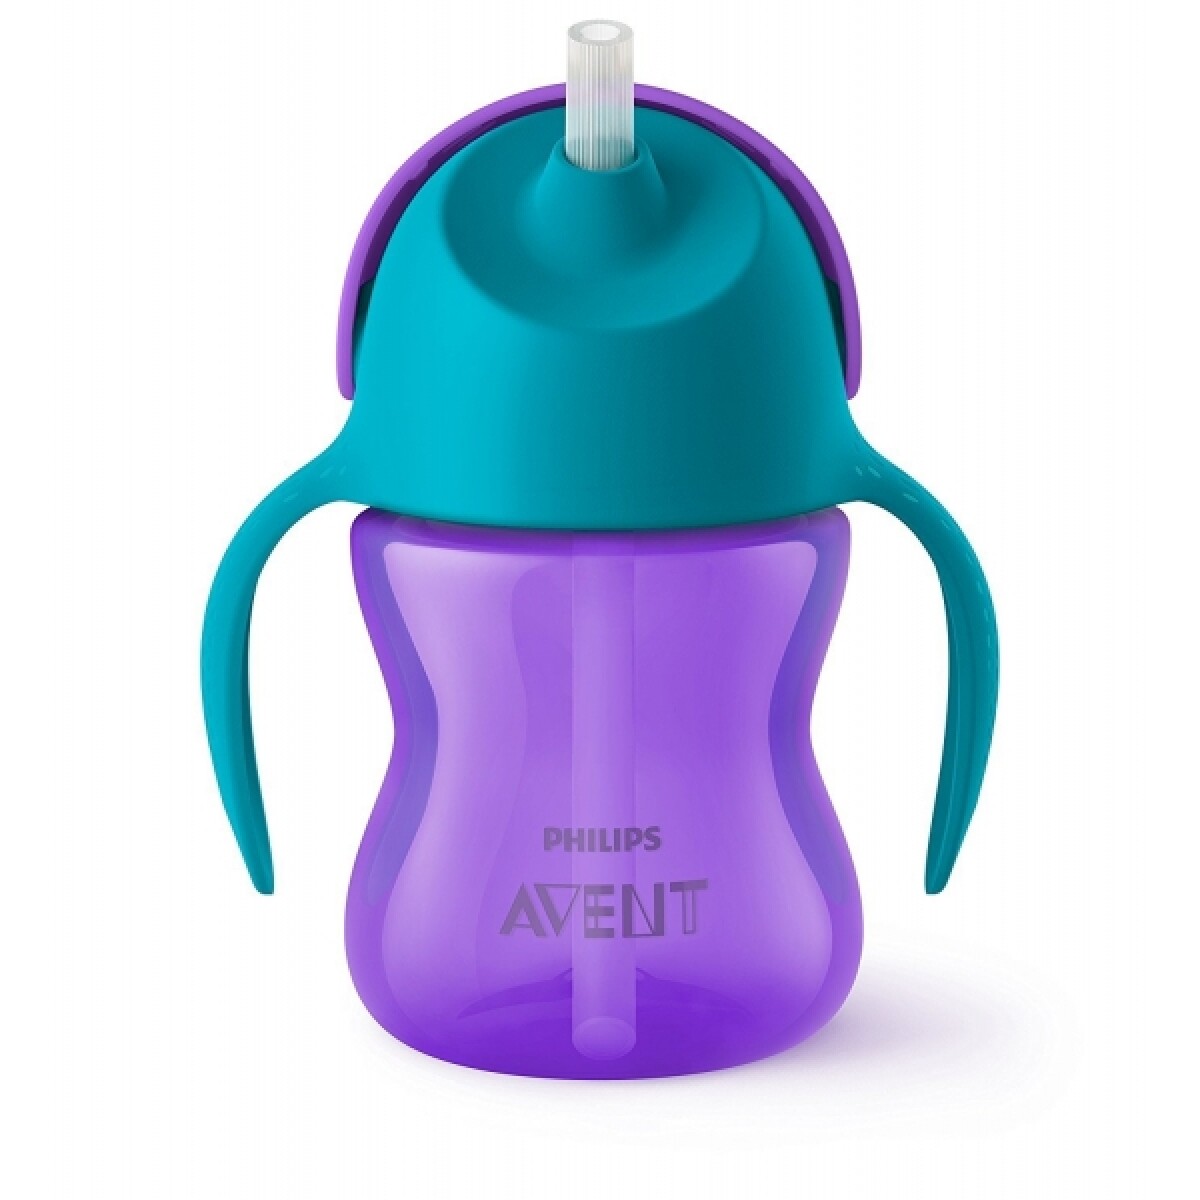 Vaso Avent straw cup con bombilla flexible 200ml violeta - VIOLETA 